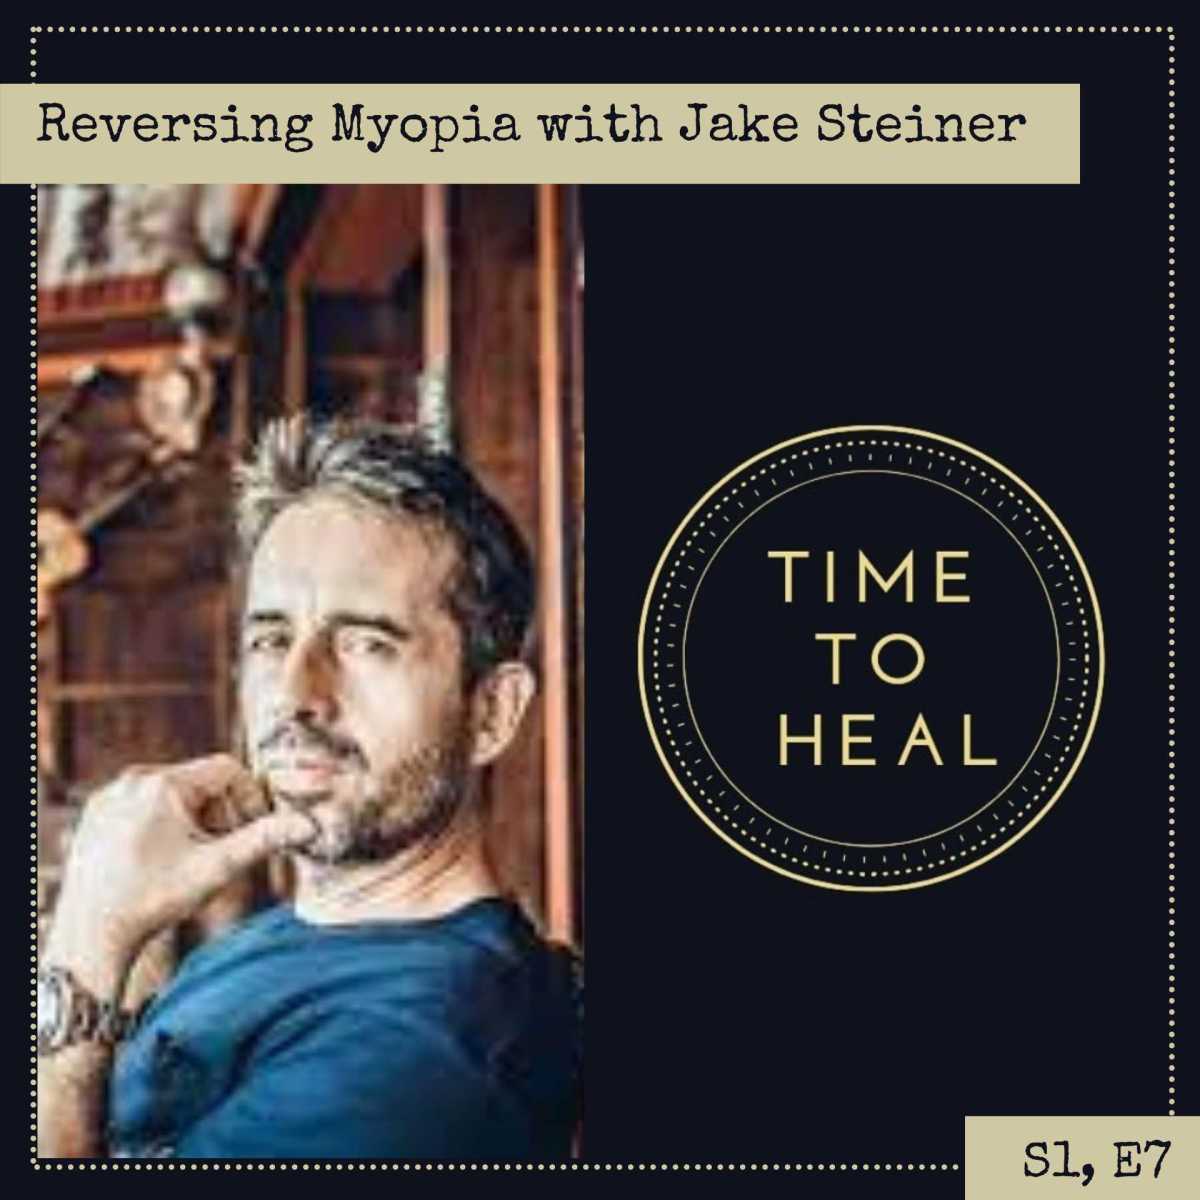 Reversing Mypoia with Jake Steiner